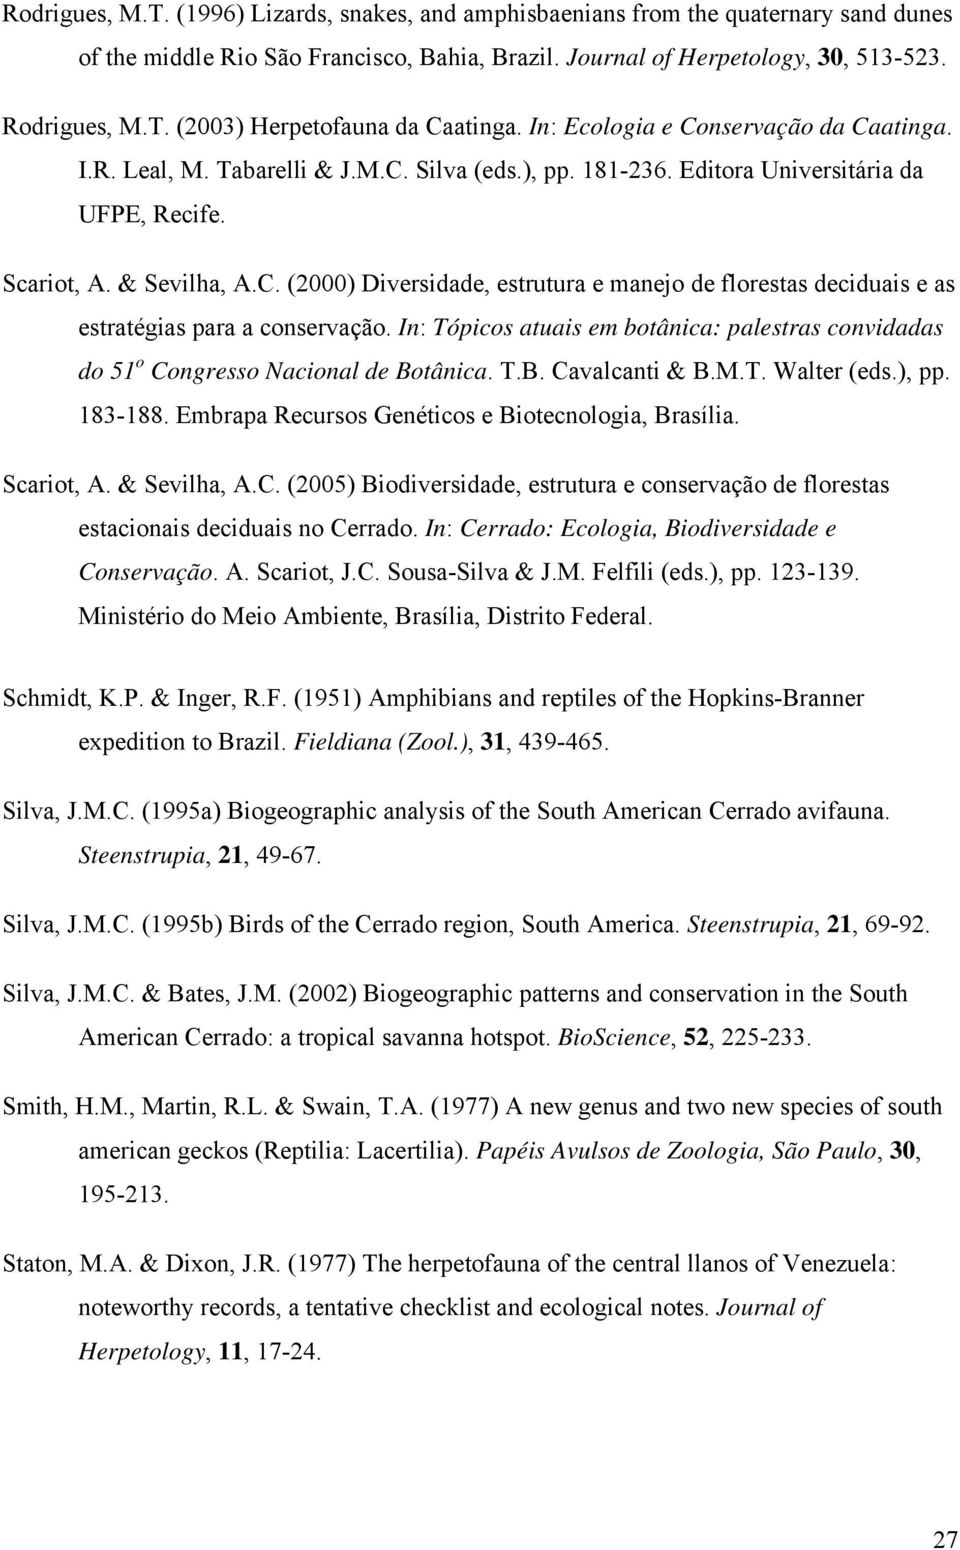 In: Tópicos atuais em botânica: palestras convidadas do 51 o Congresso Nacional de Botânica. T.B. Cavalcanti & B.M.T. Walter (eds.), pp. 183-188. Embrapa Recursos Genéticos e Biotecnologia, Brasília.